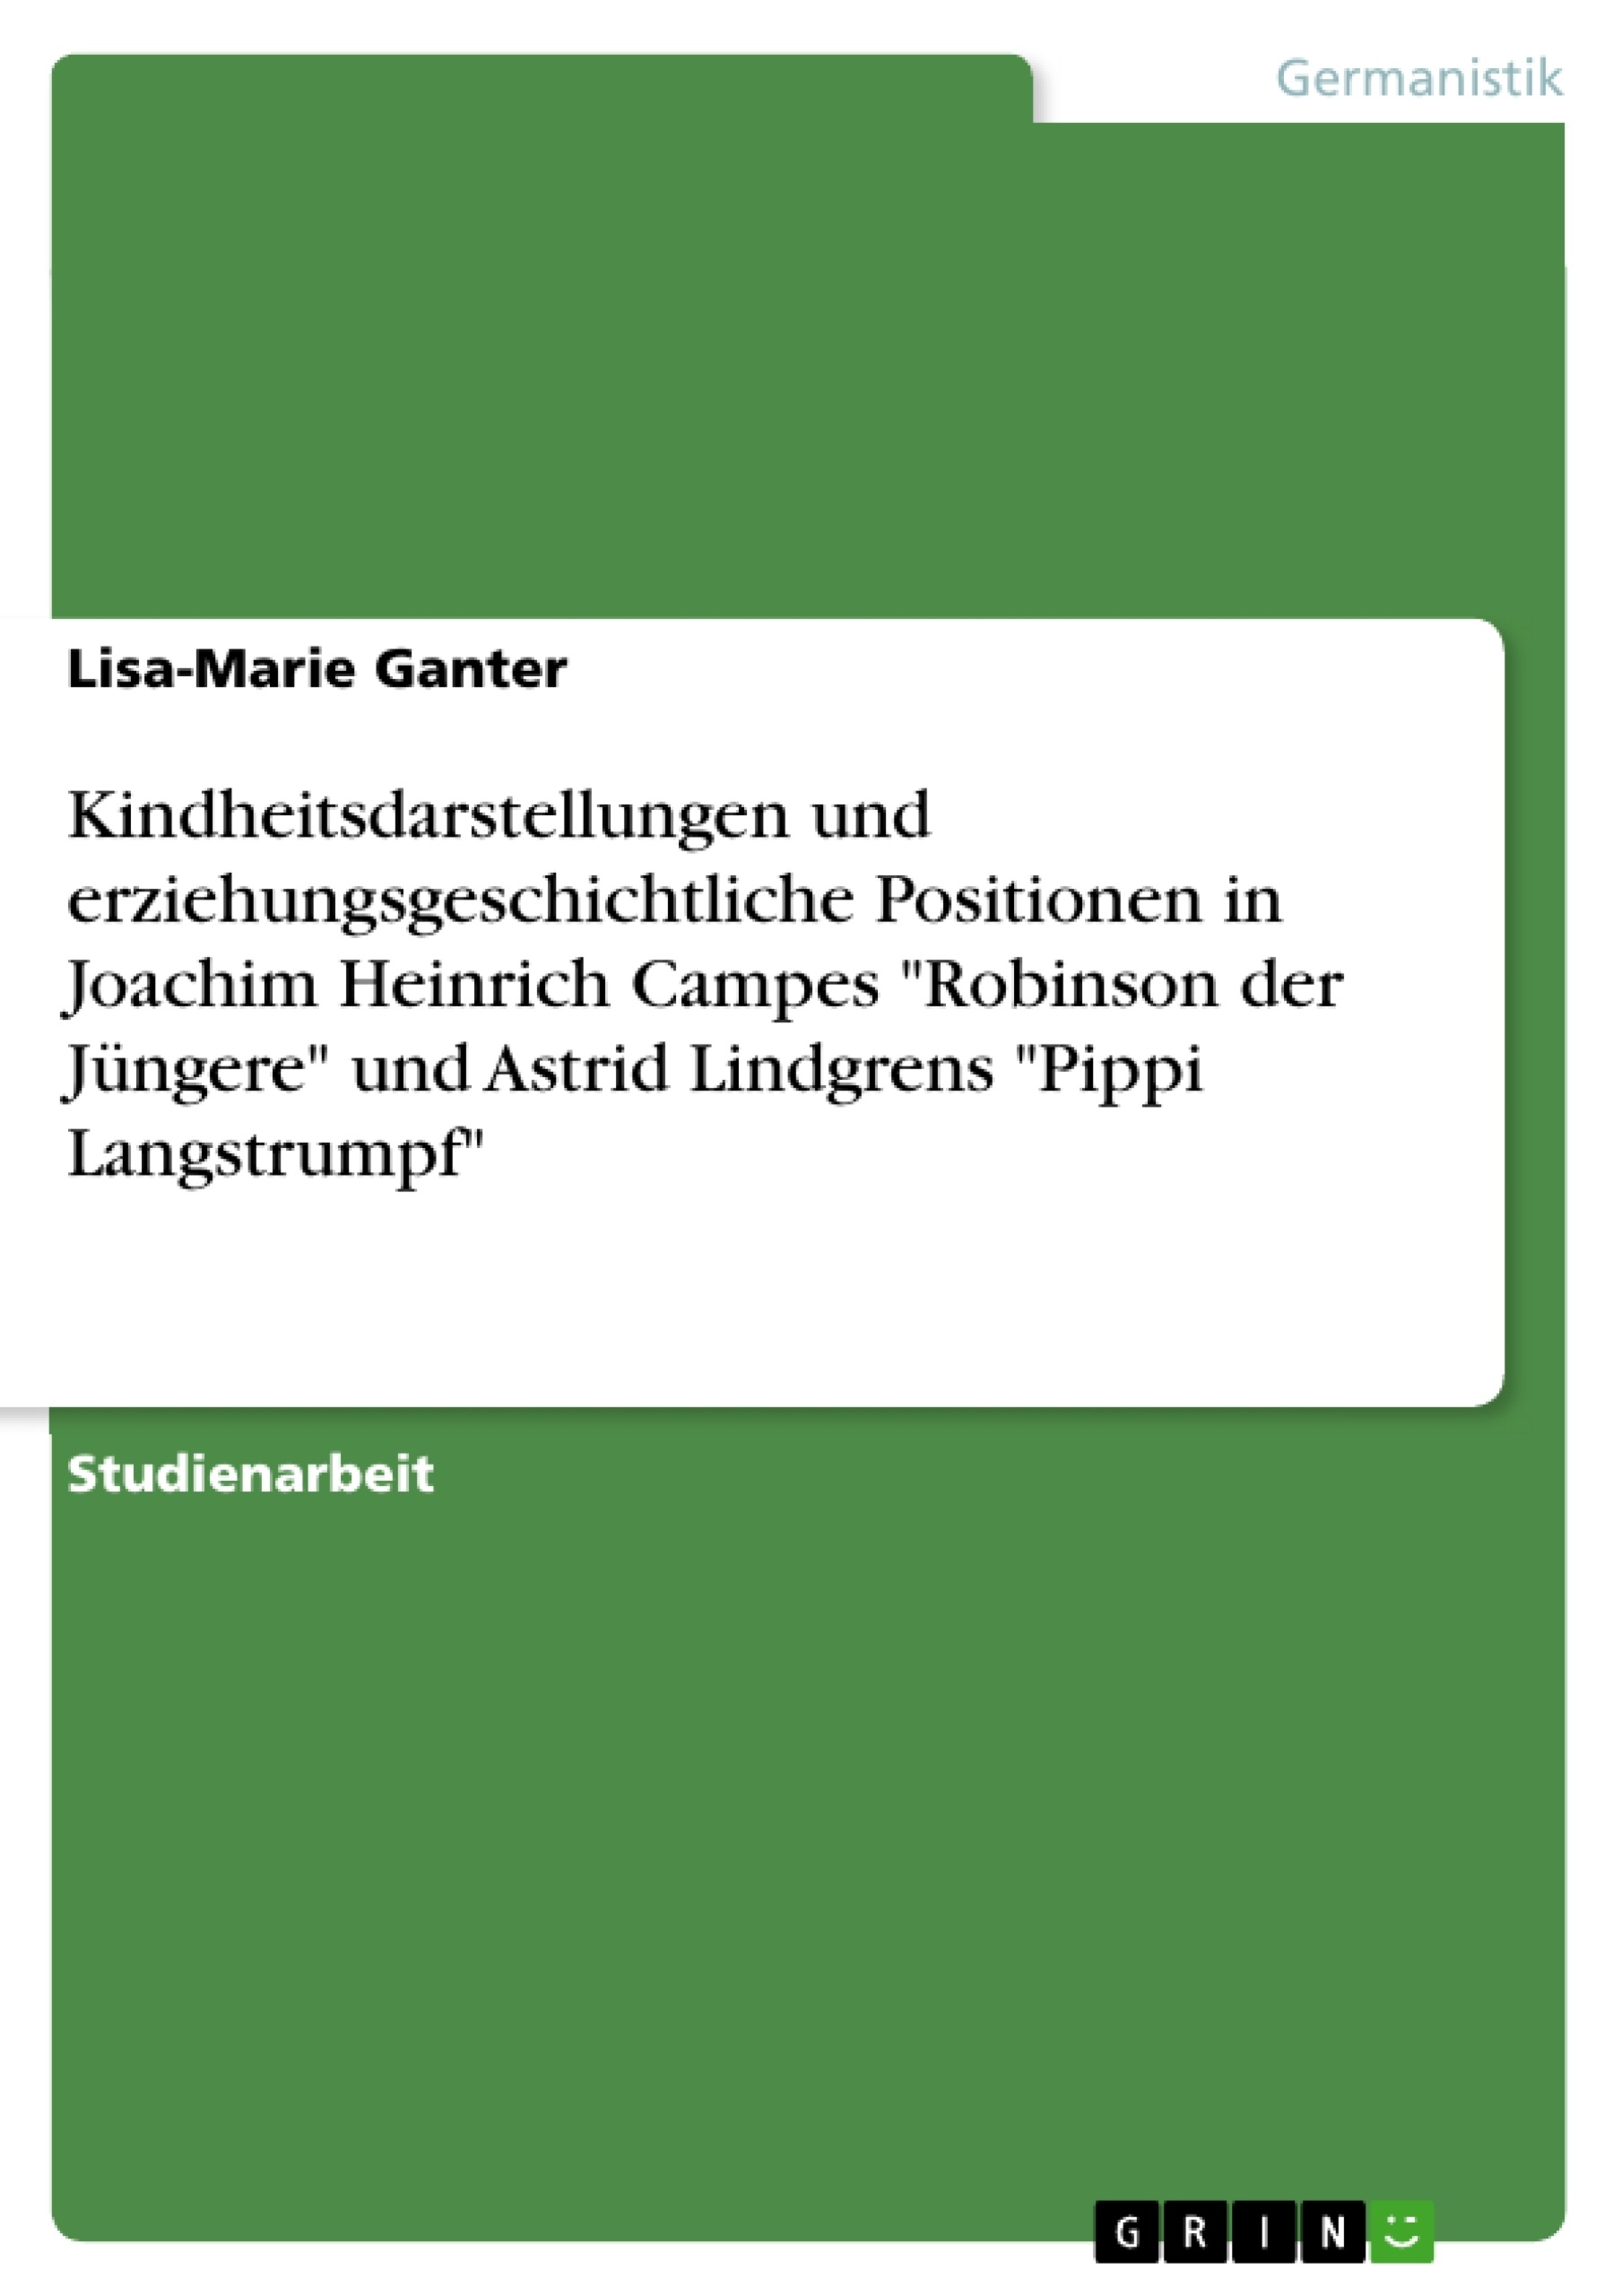 Titel: Kindheitsdarstellungen und erziehungsgeschichtliche Positionen in Joachim Heinrich Campes "Robinson der Jüngere" und Astrid Lindgrens "Pippi Langstrumpf"